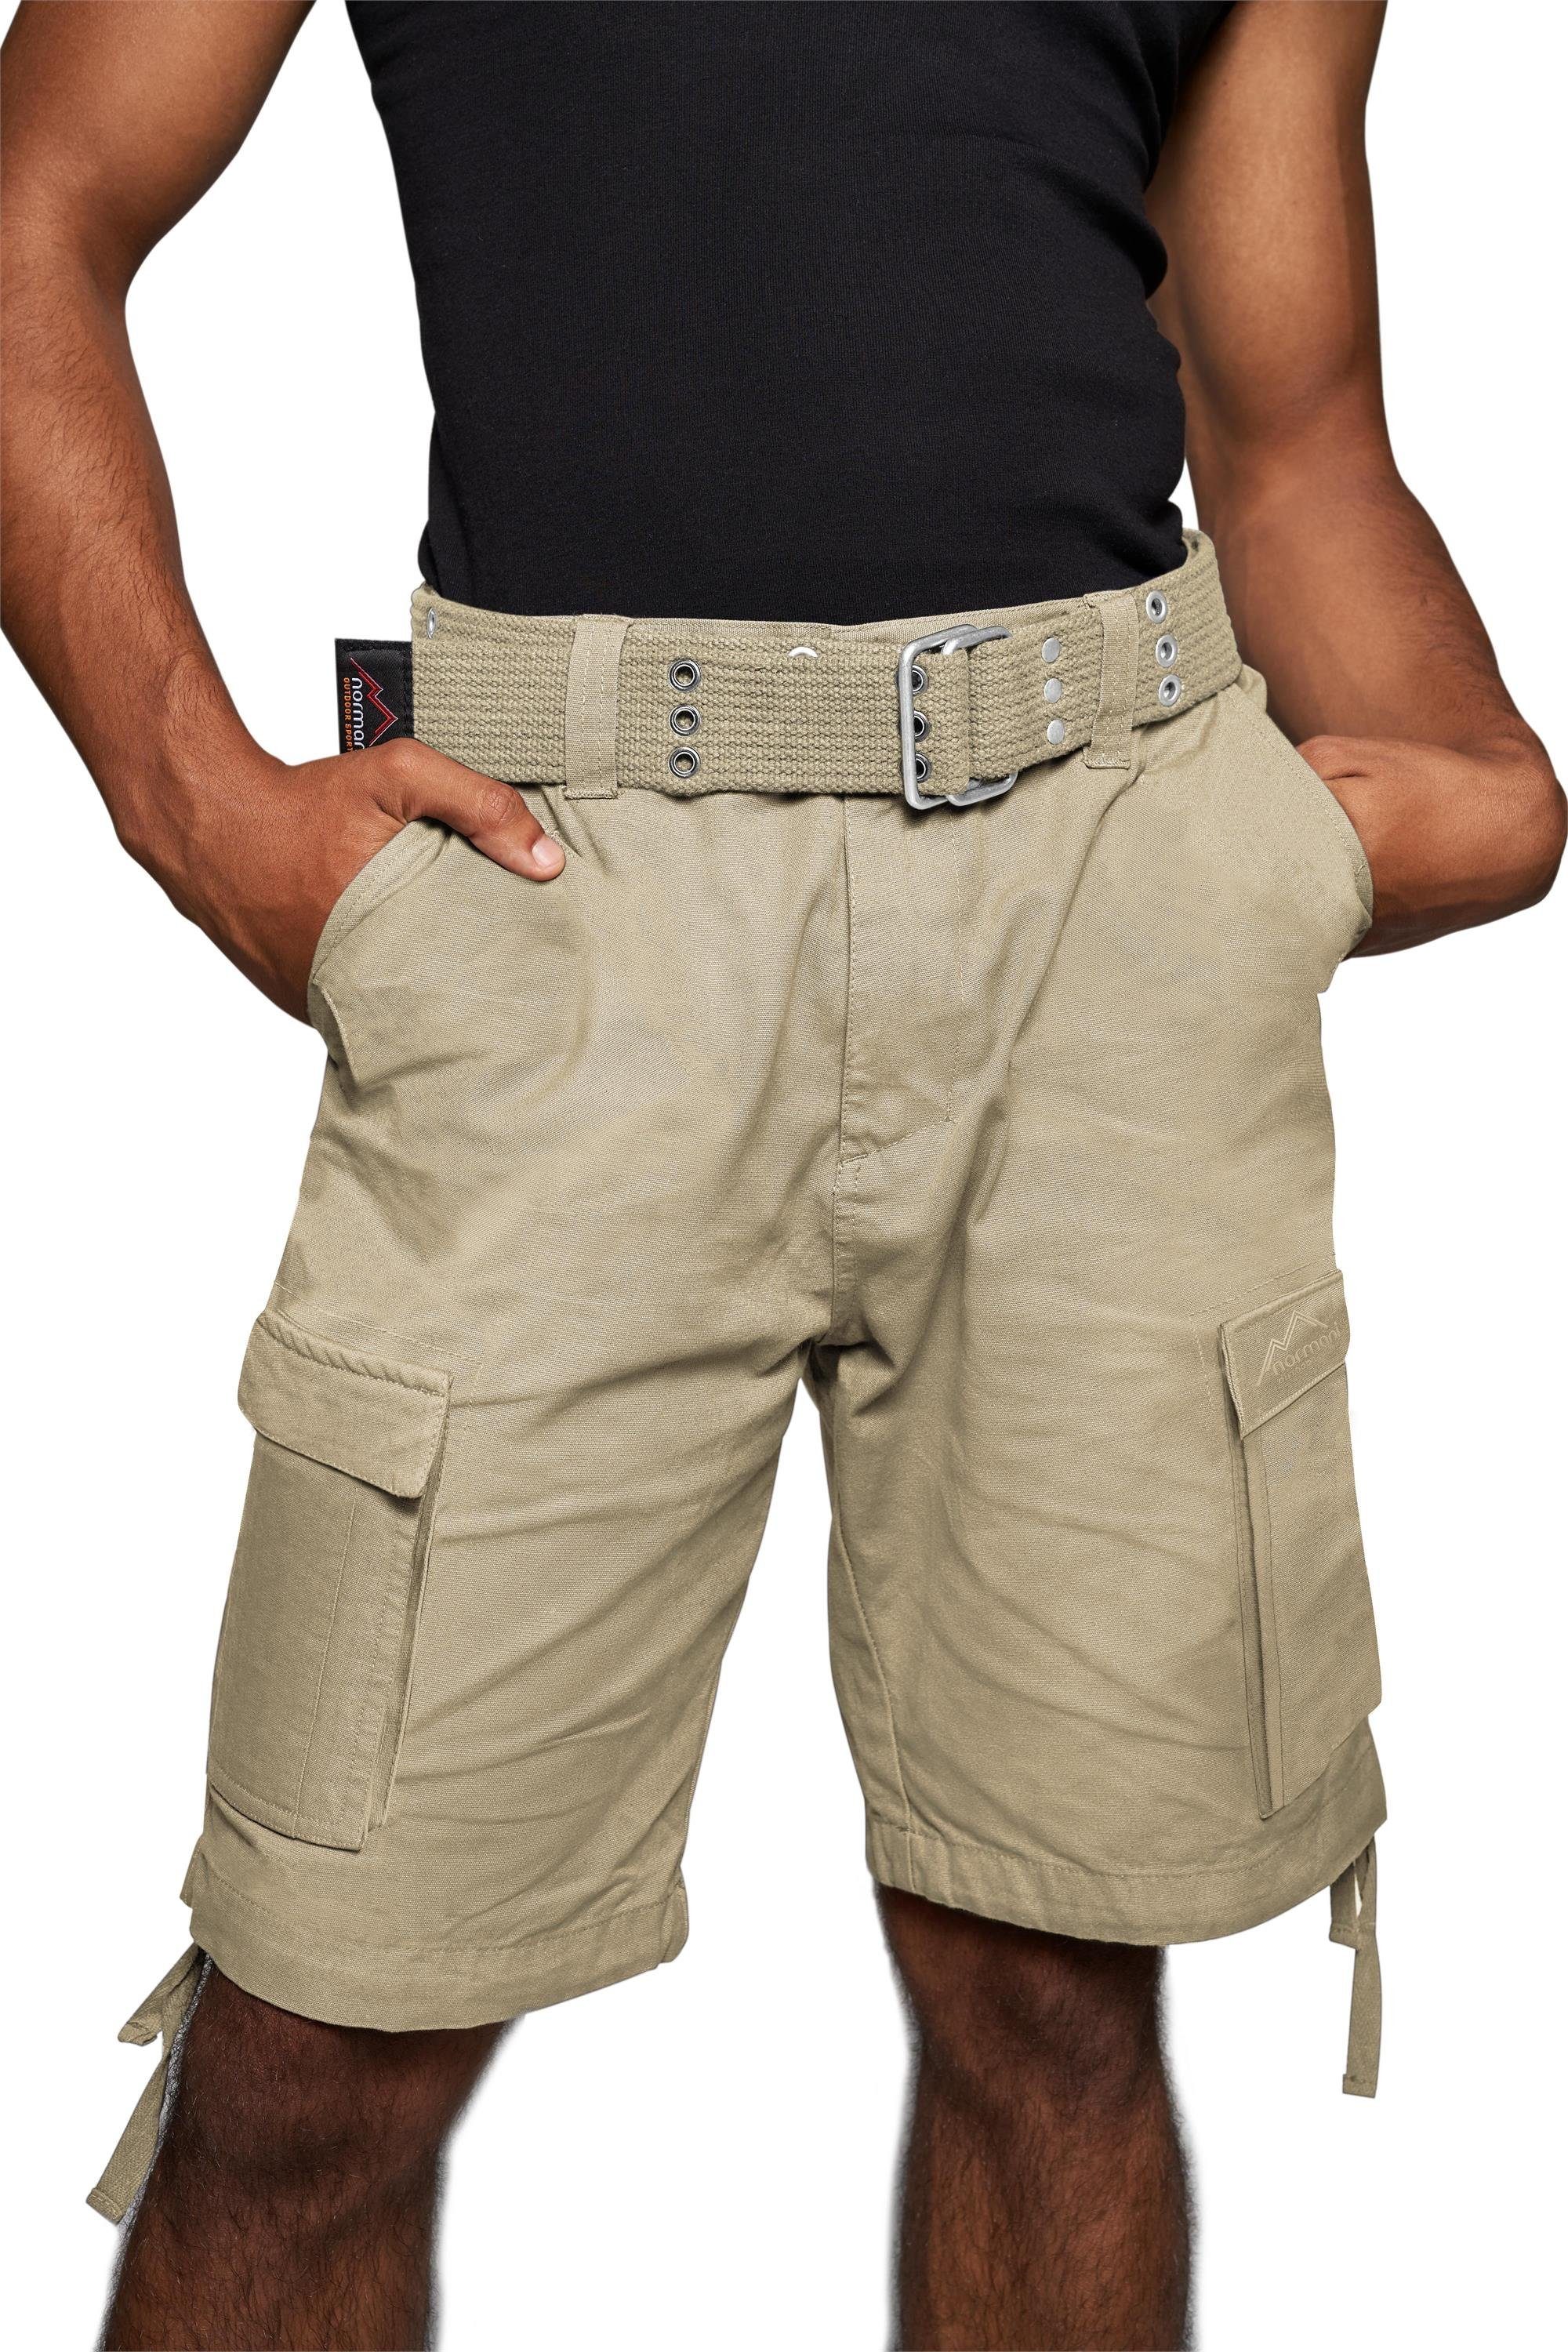 normani Bermudas Sommer-Shorts „Kalahari“ mit Gürtel „Wadi“ kurze Sommerhose Freizeithose Vintage-Shorts - 100% nachhaltige Bio-Baumwolle Khaki